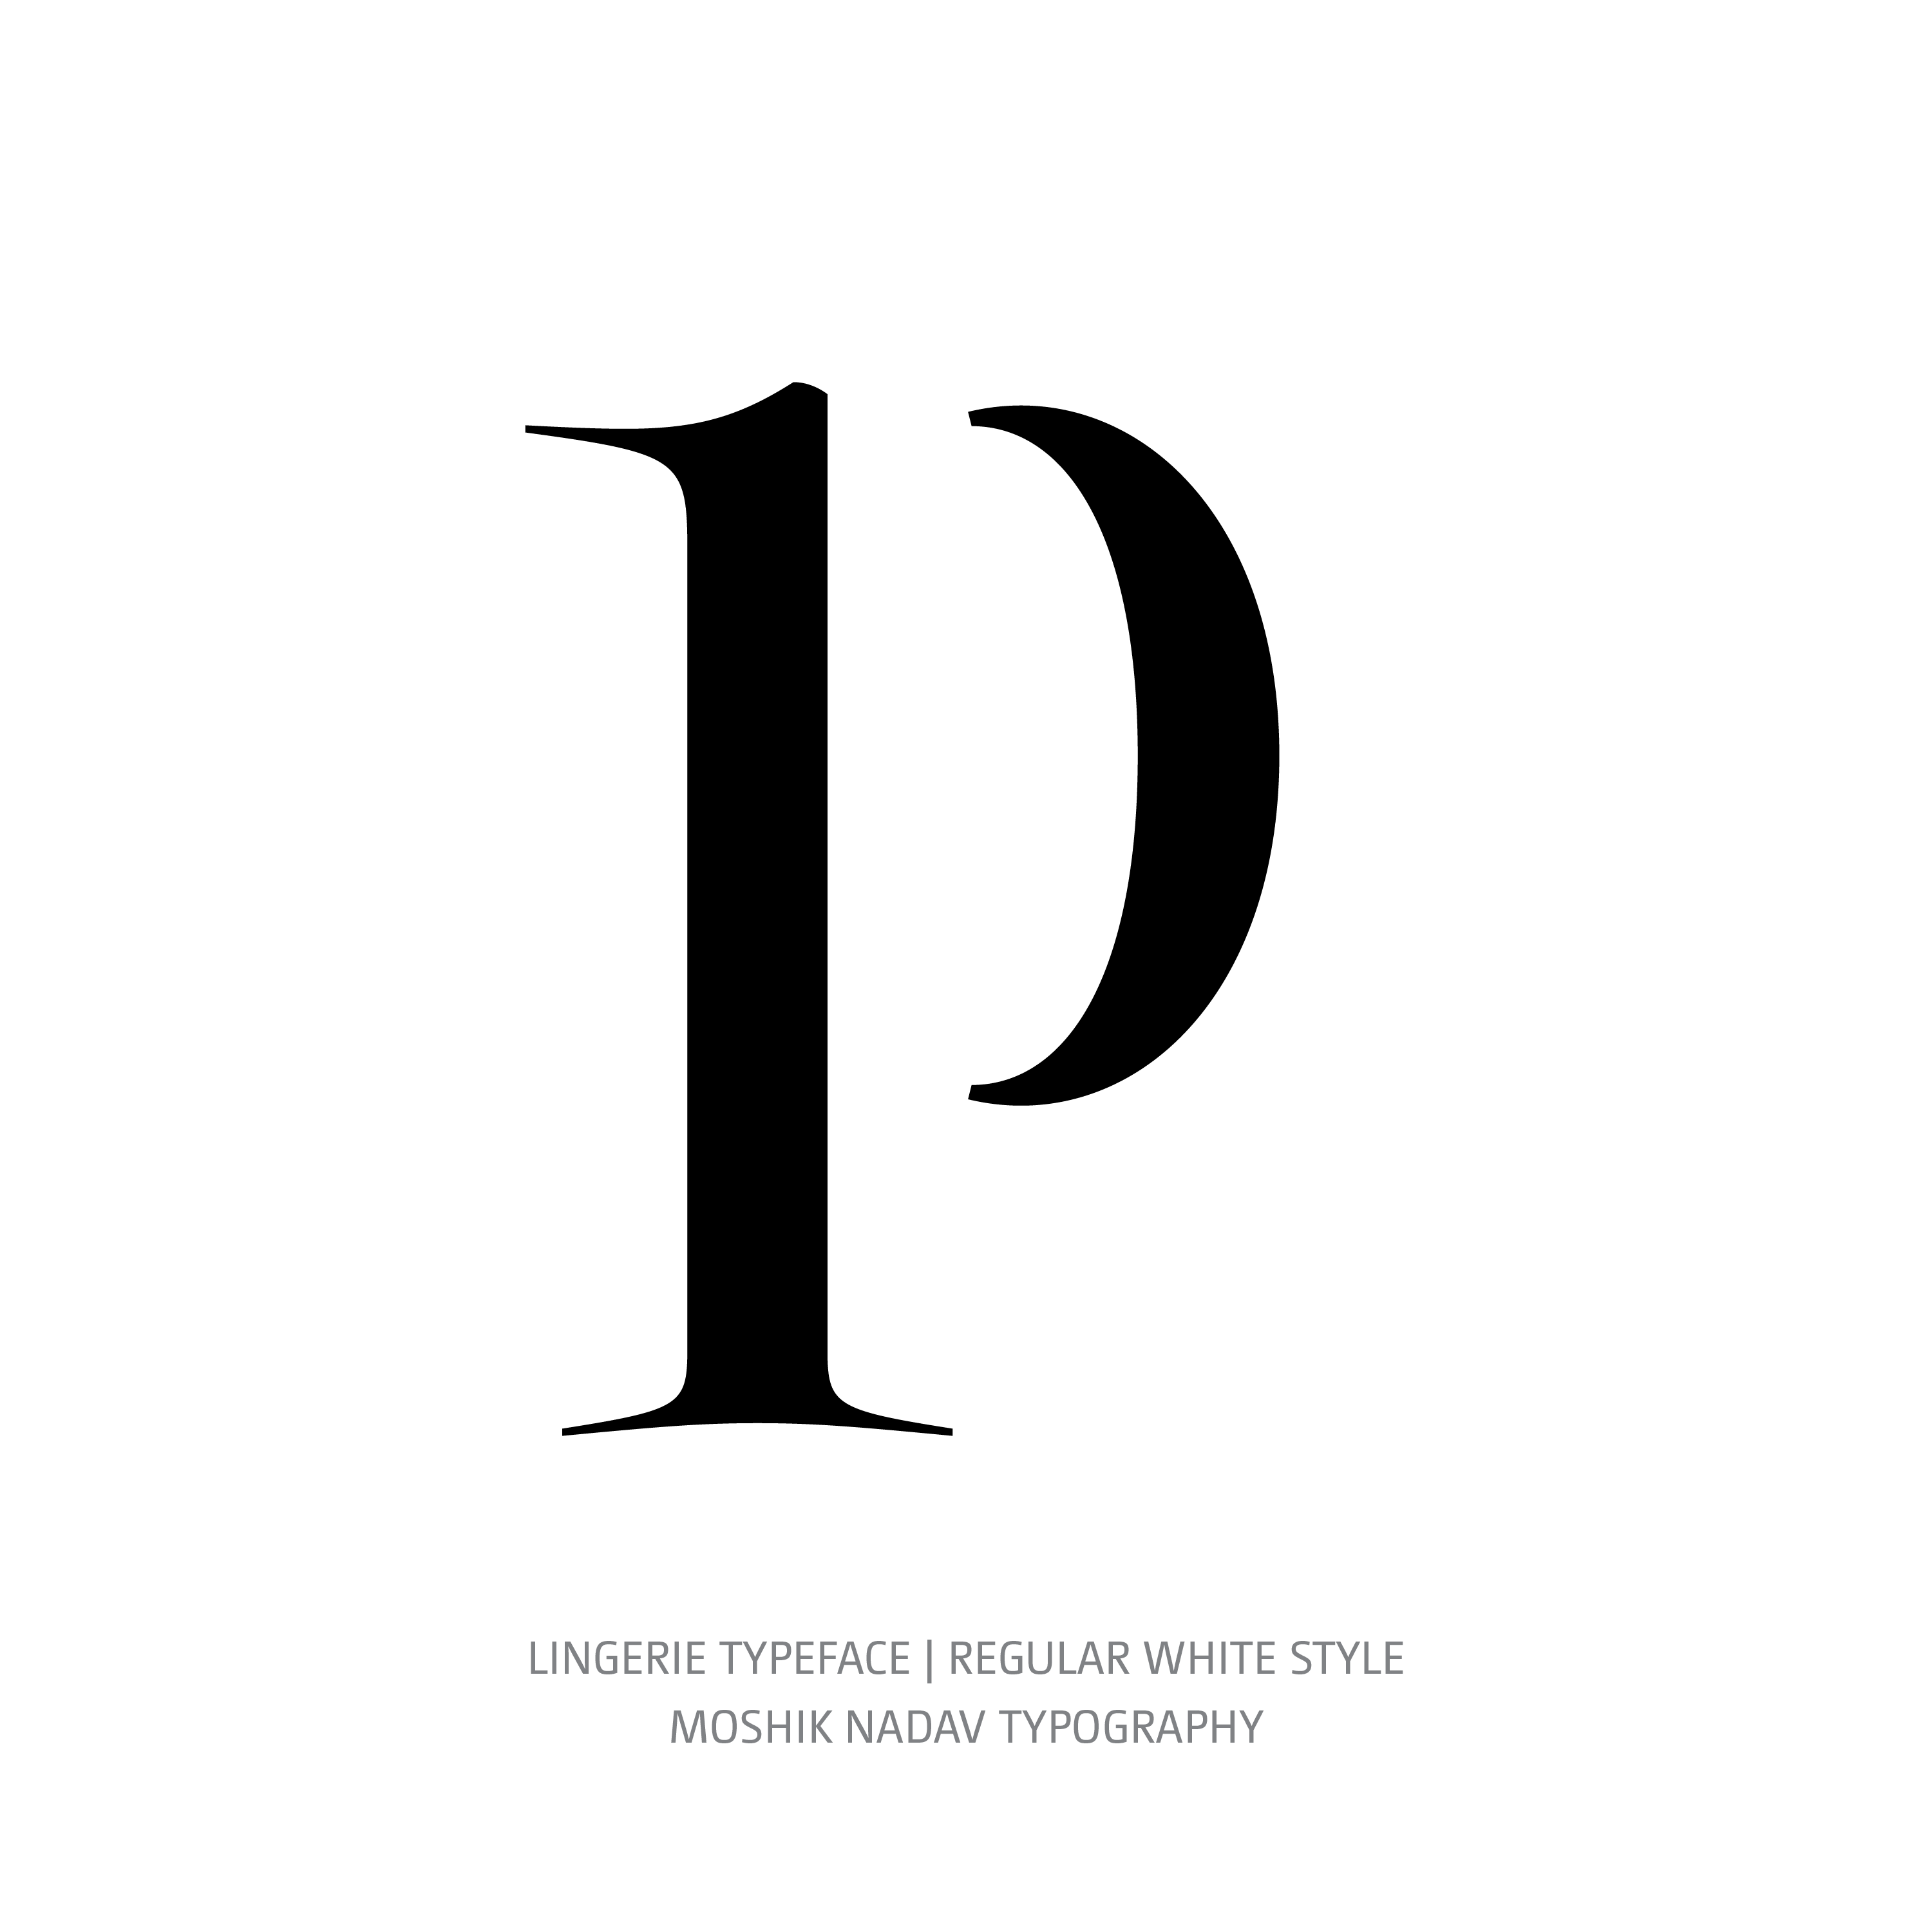 Lingerie Typeface Regular White p